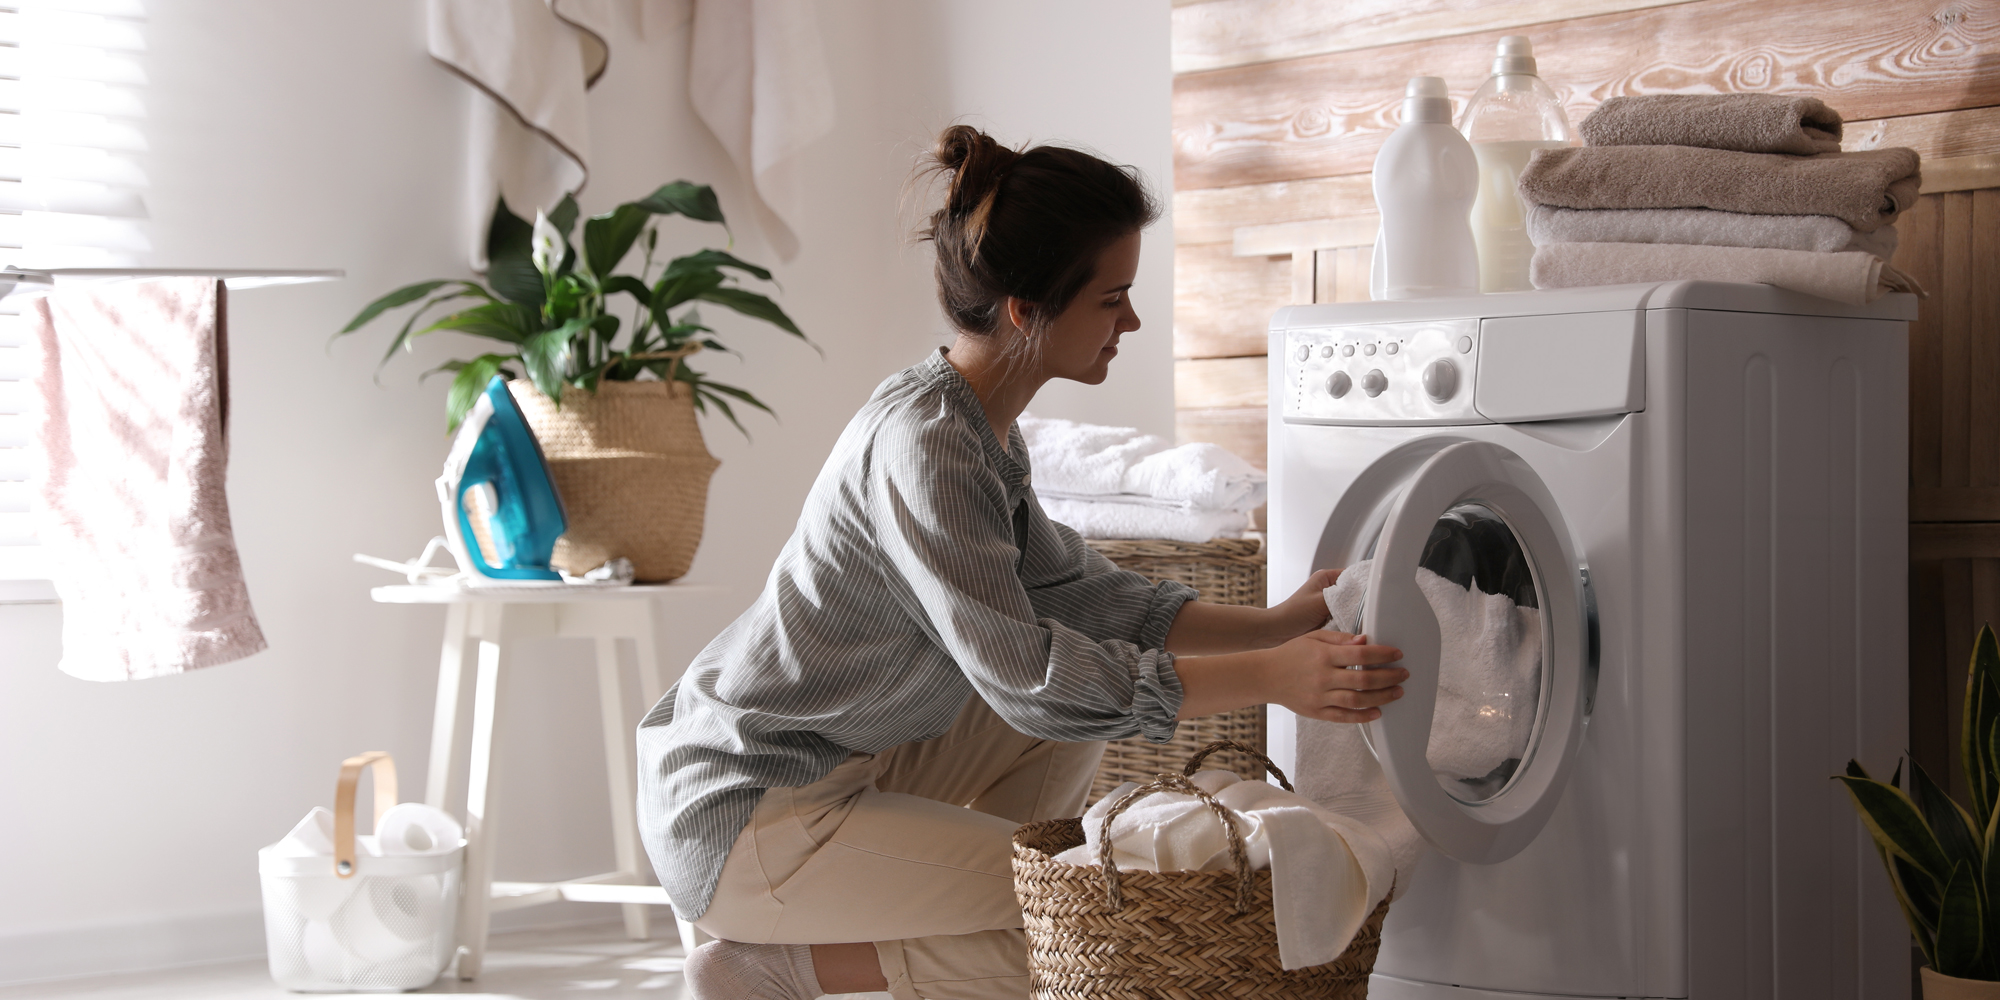 Kvinde lægger tøj i vaskemaskine, som er en af de elapparater i hjemmet, som bruger meget strøm